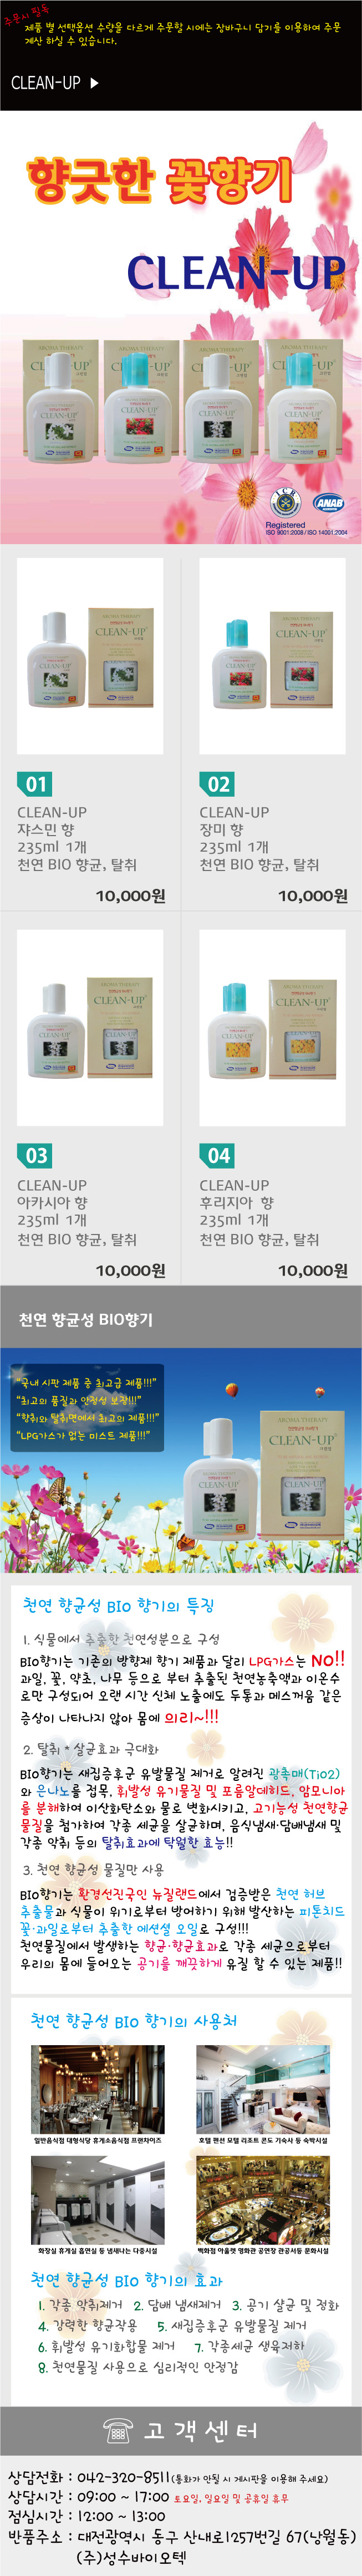 clean-up_flower_1.jpg